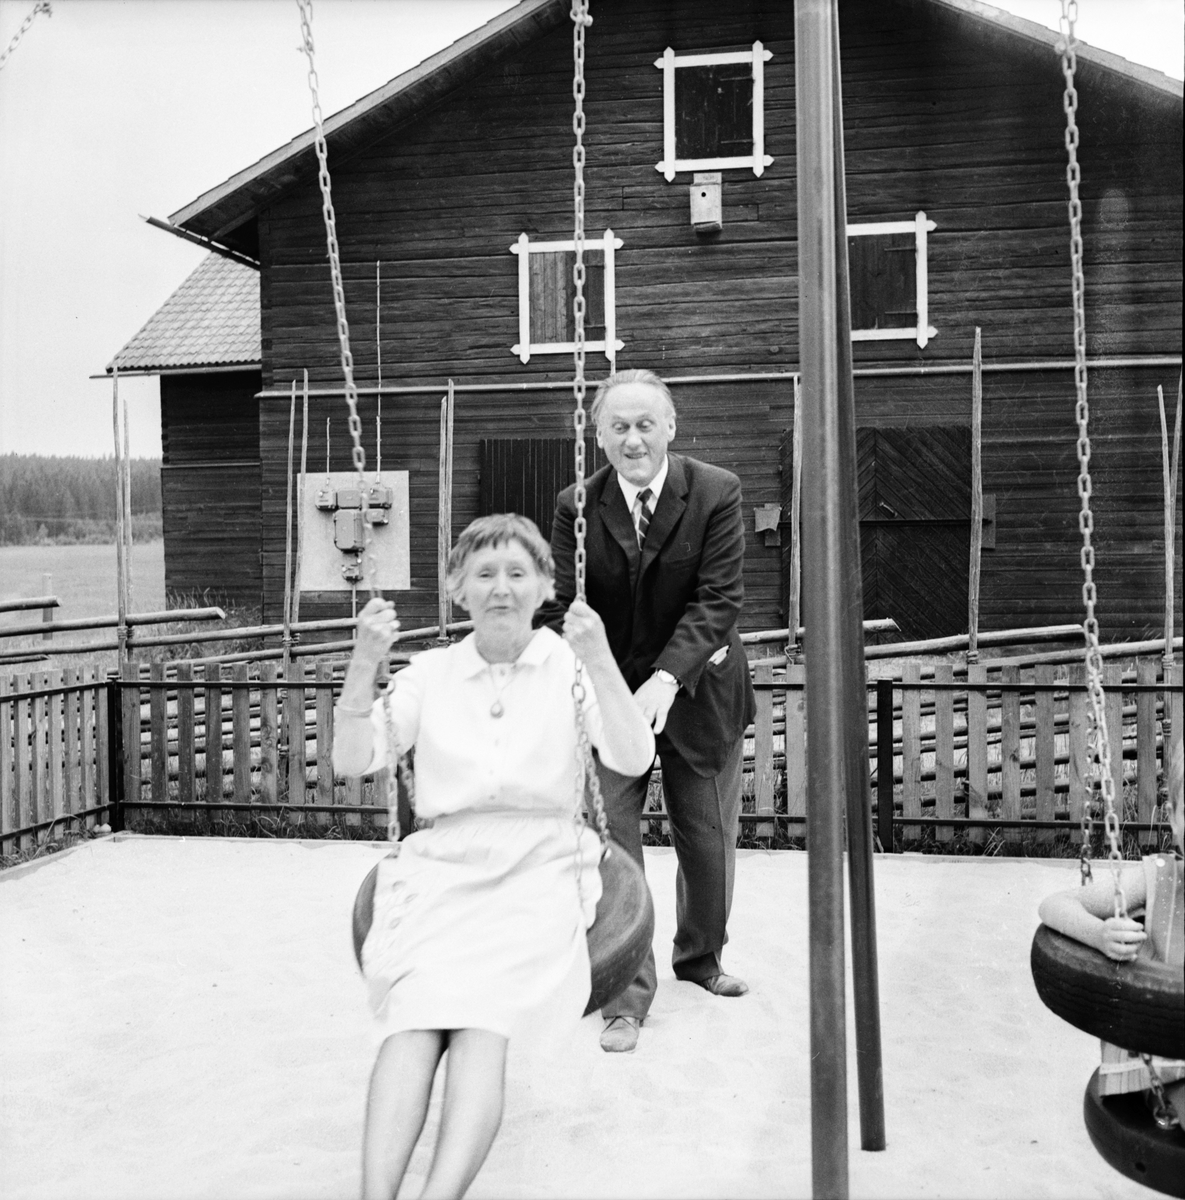 Träslottet,
Arbrå,
Invigning av lekplats,
25 Juni 1966